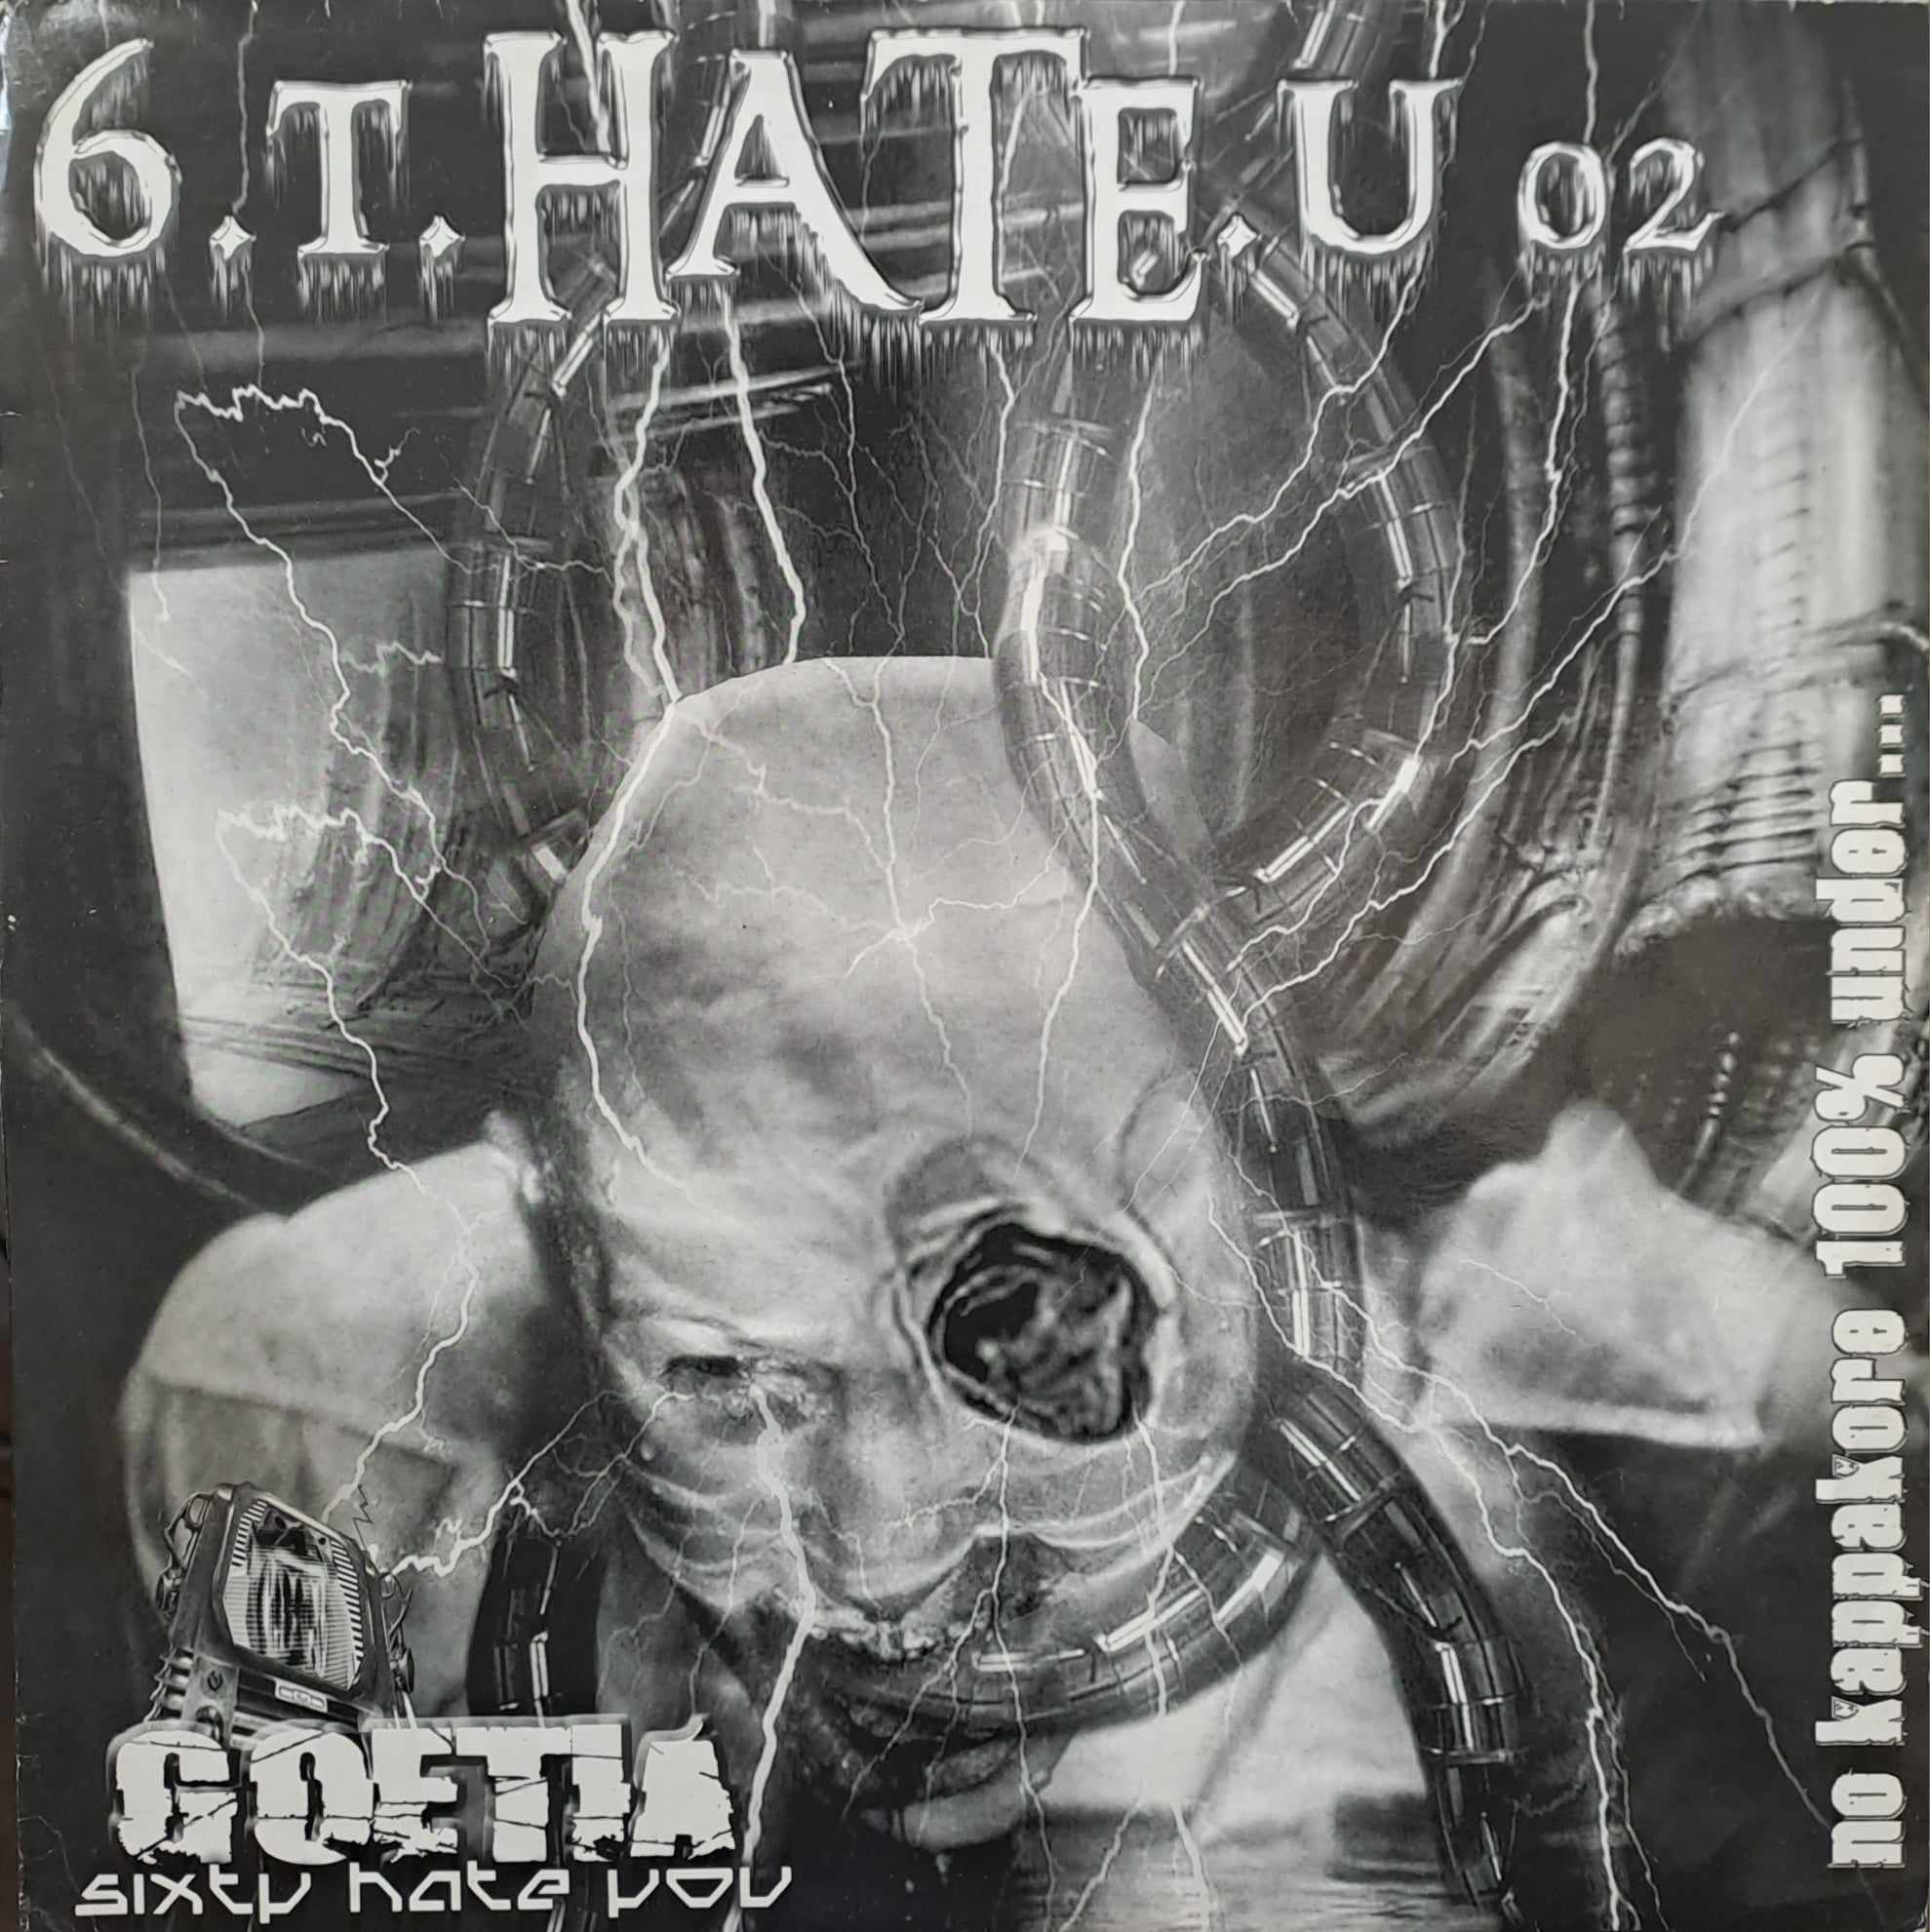 6.T.Hate.U 02 - vinyle hardcore